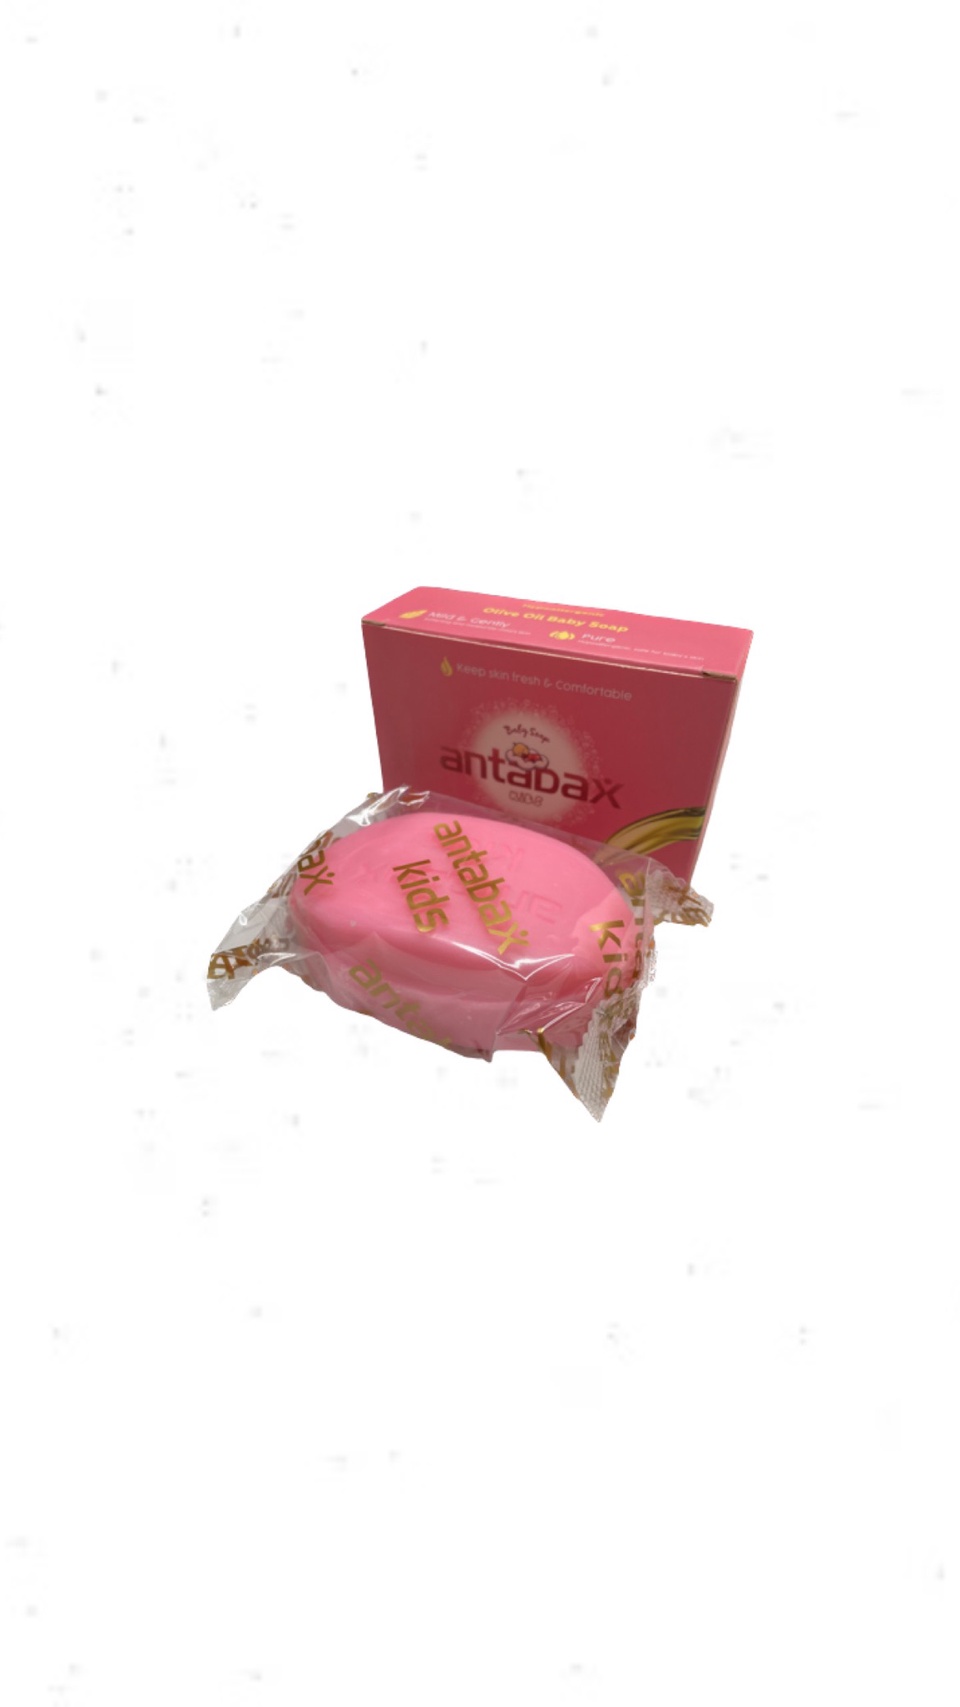 Antabax Детское Мыло Розовое 90 гр - 150 ₽, заказать онлайн.